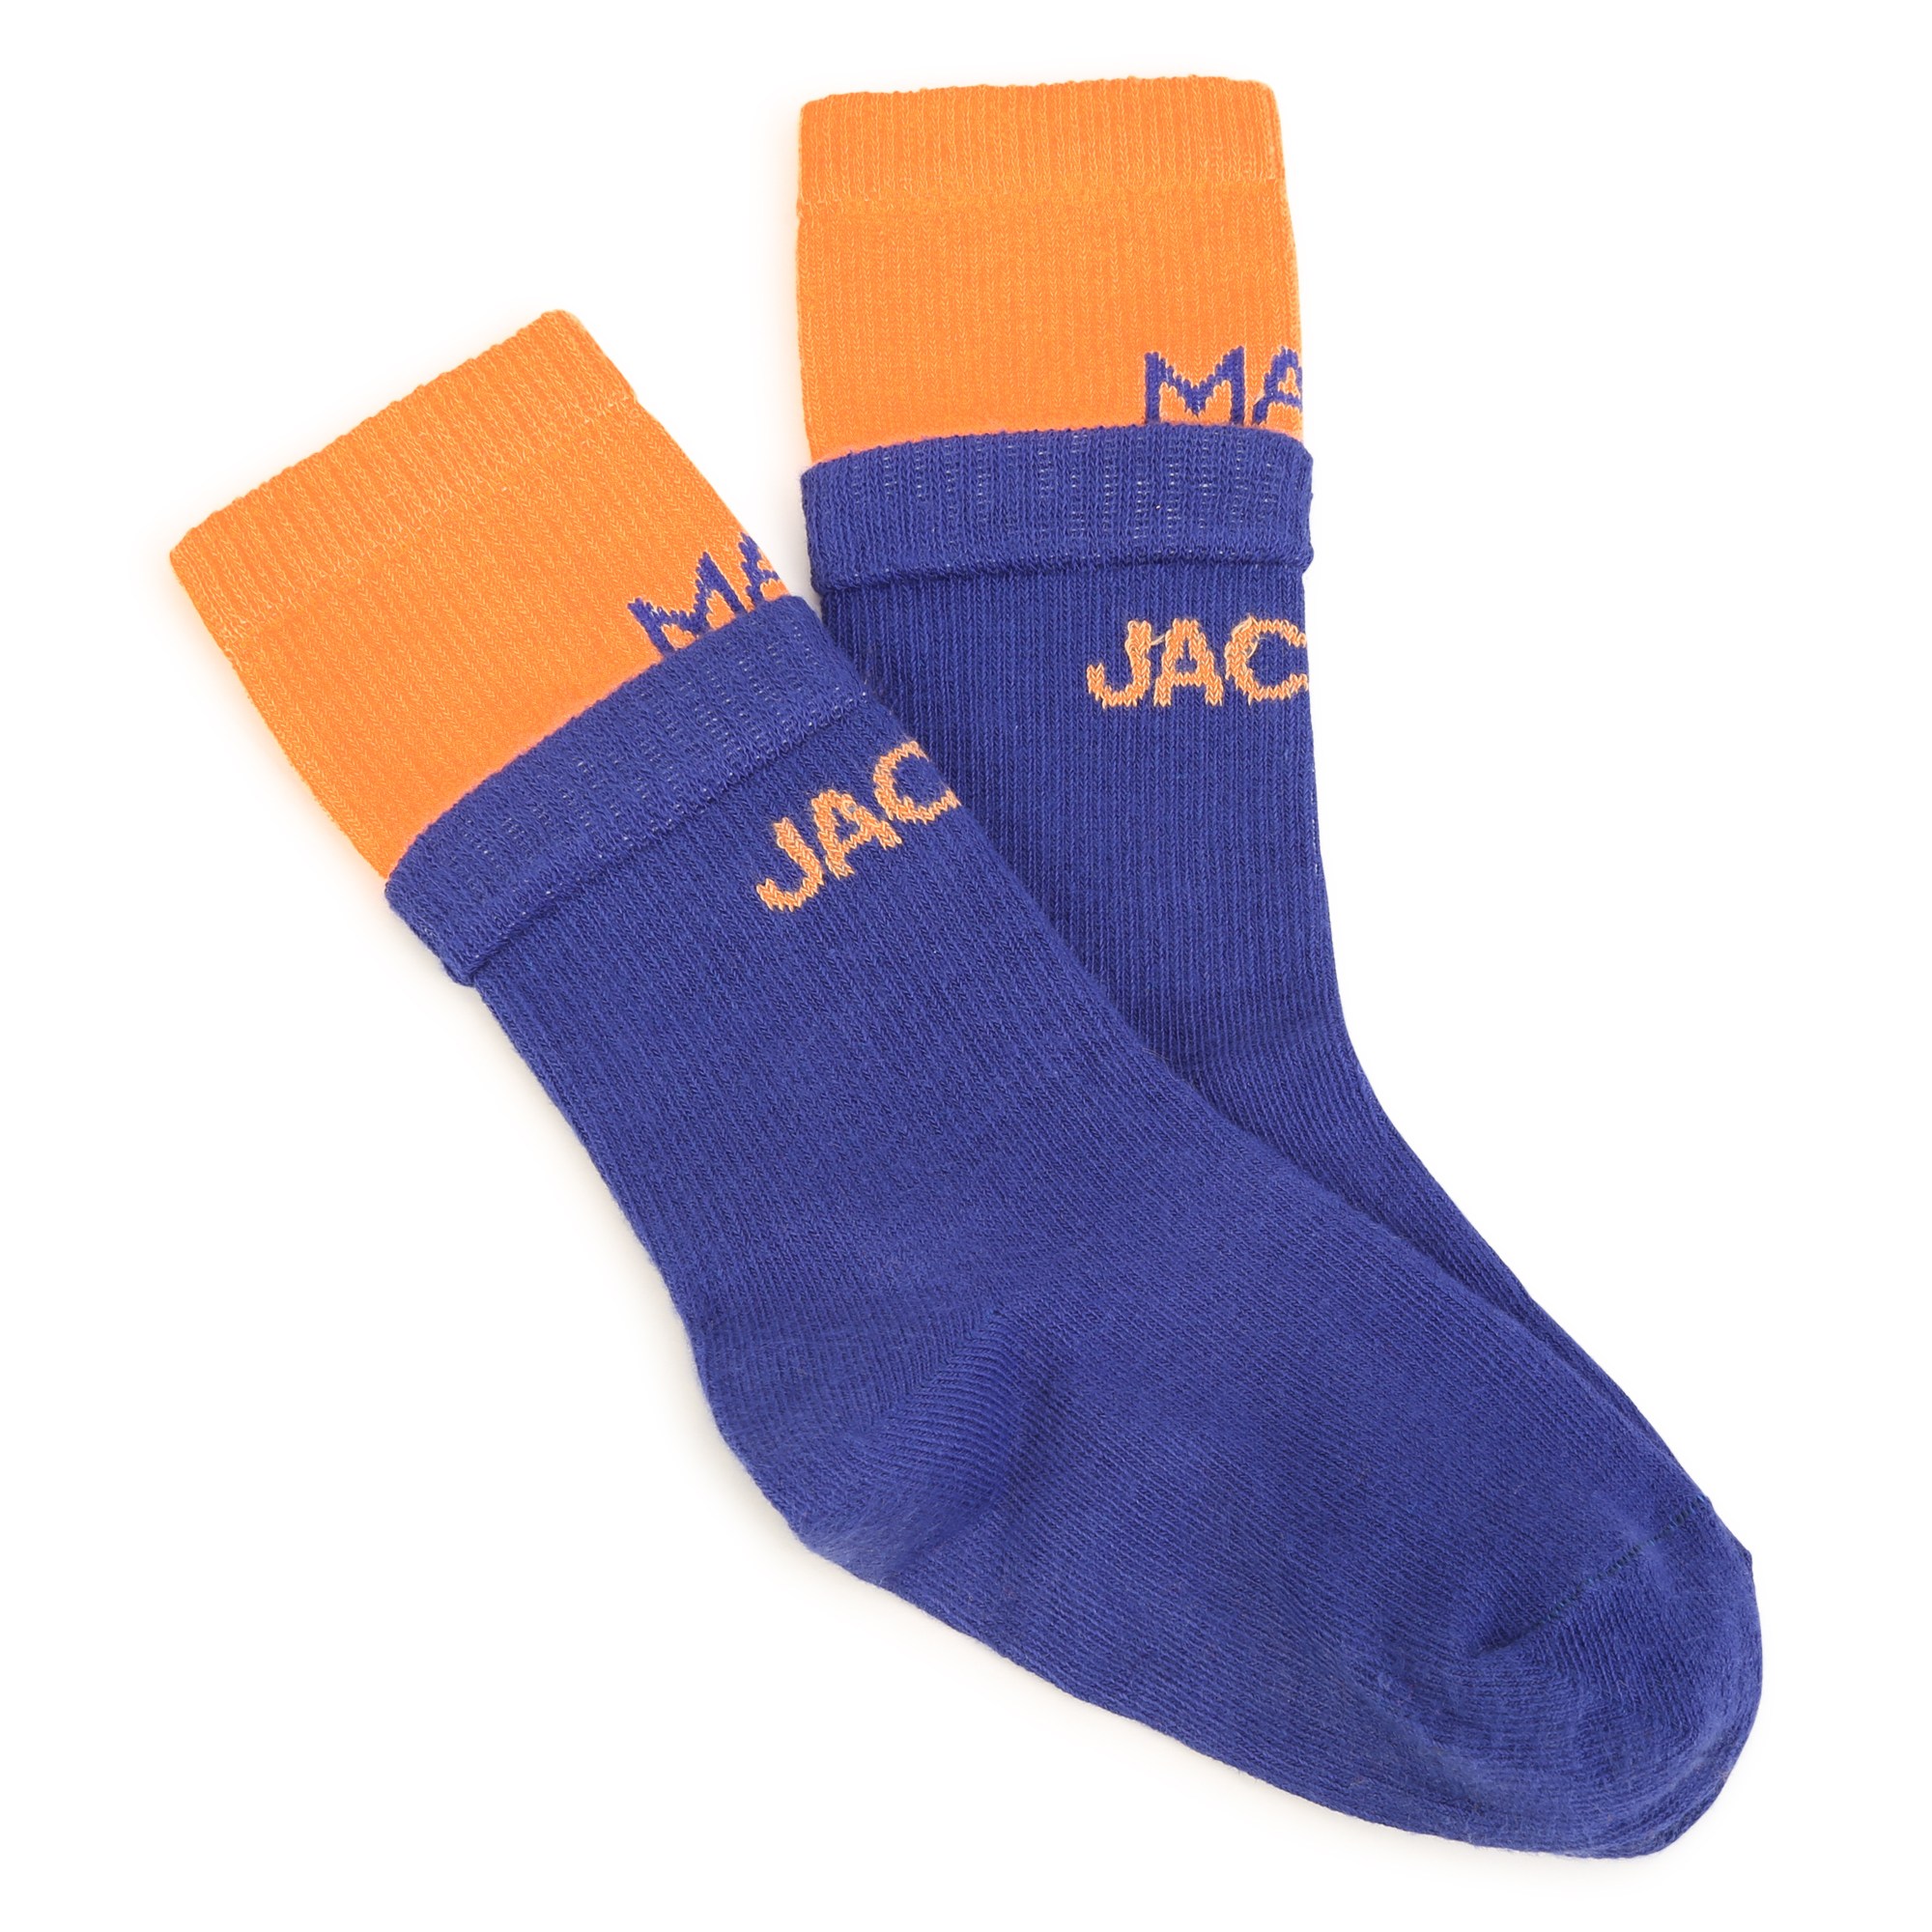 Zweifarbige Socken MARC JACOBS Für JUNGE